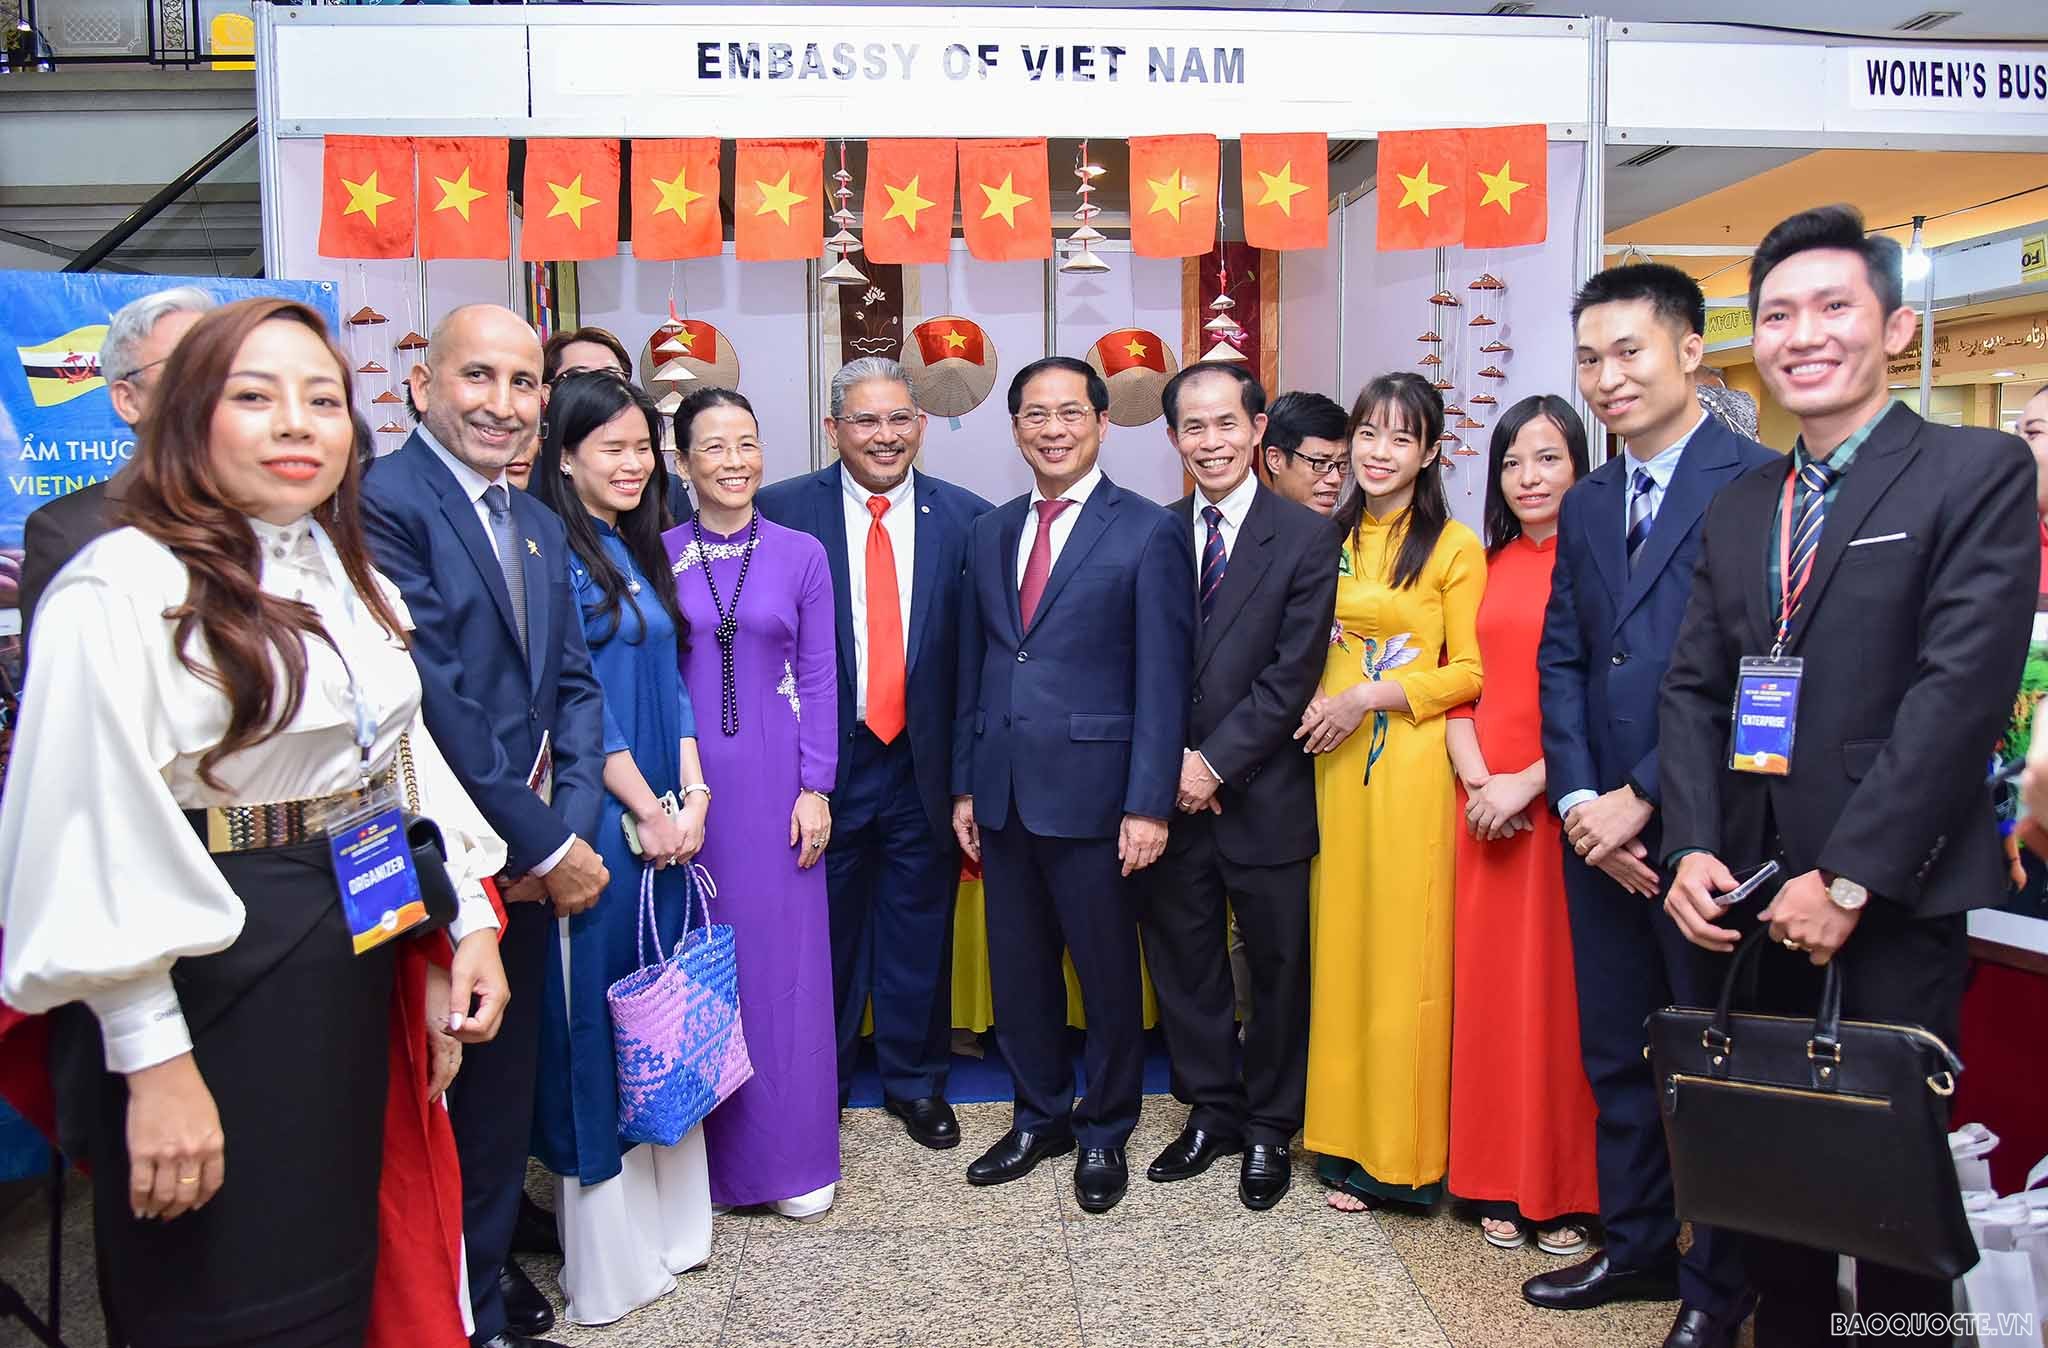 Bộ trưởng Ngoại giao Bùi Thanh Sơn và Bộ trưởng Dato Erywan đã dự lễ khai mạc và thăm quan một số gian hàng của Việt Nam và Brunei trong khuôn khổ triển lãm.